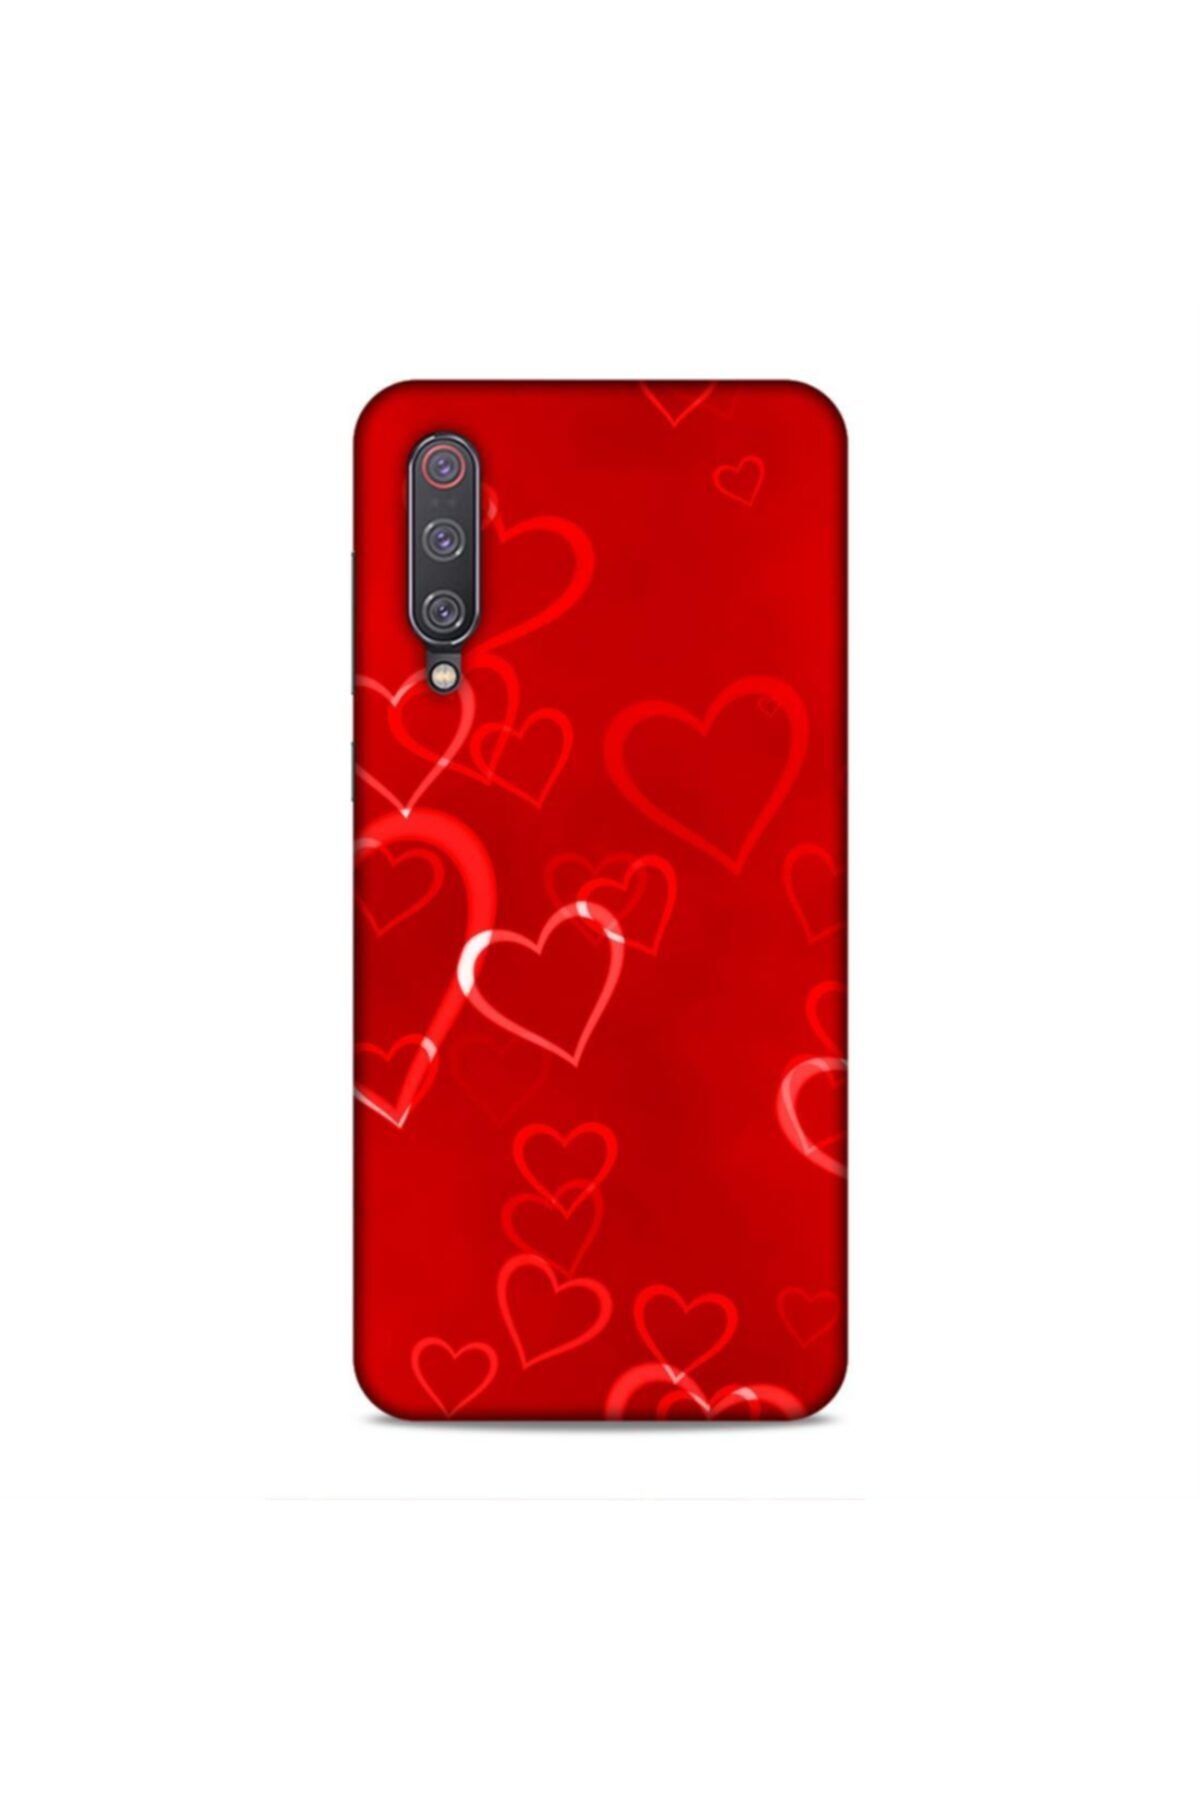 Pickcase Xiaomi Mi 9 Kılıf Desenli Arka Kapak Kırmızı Kalpler